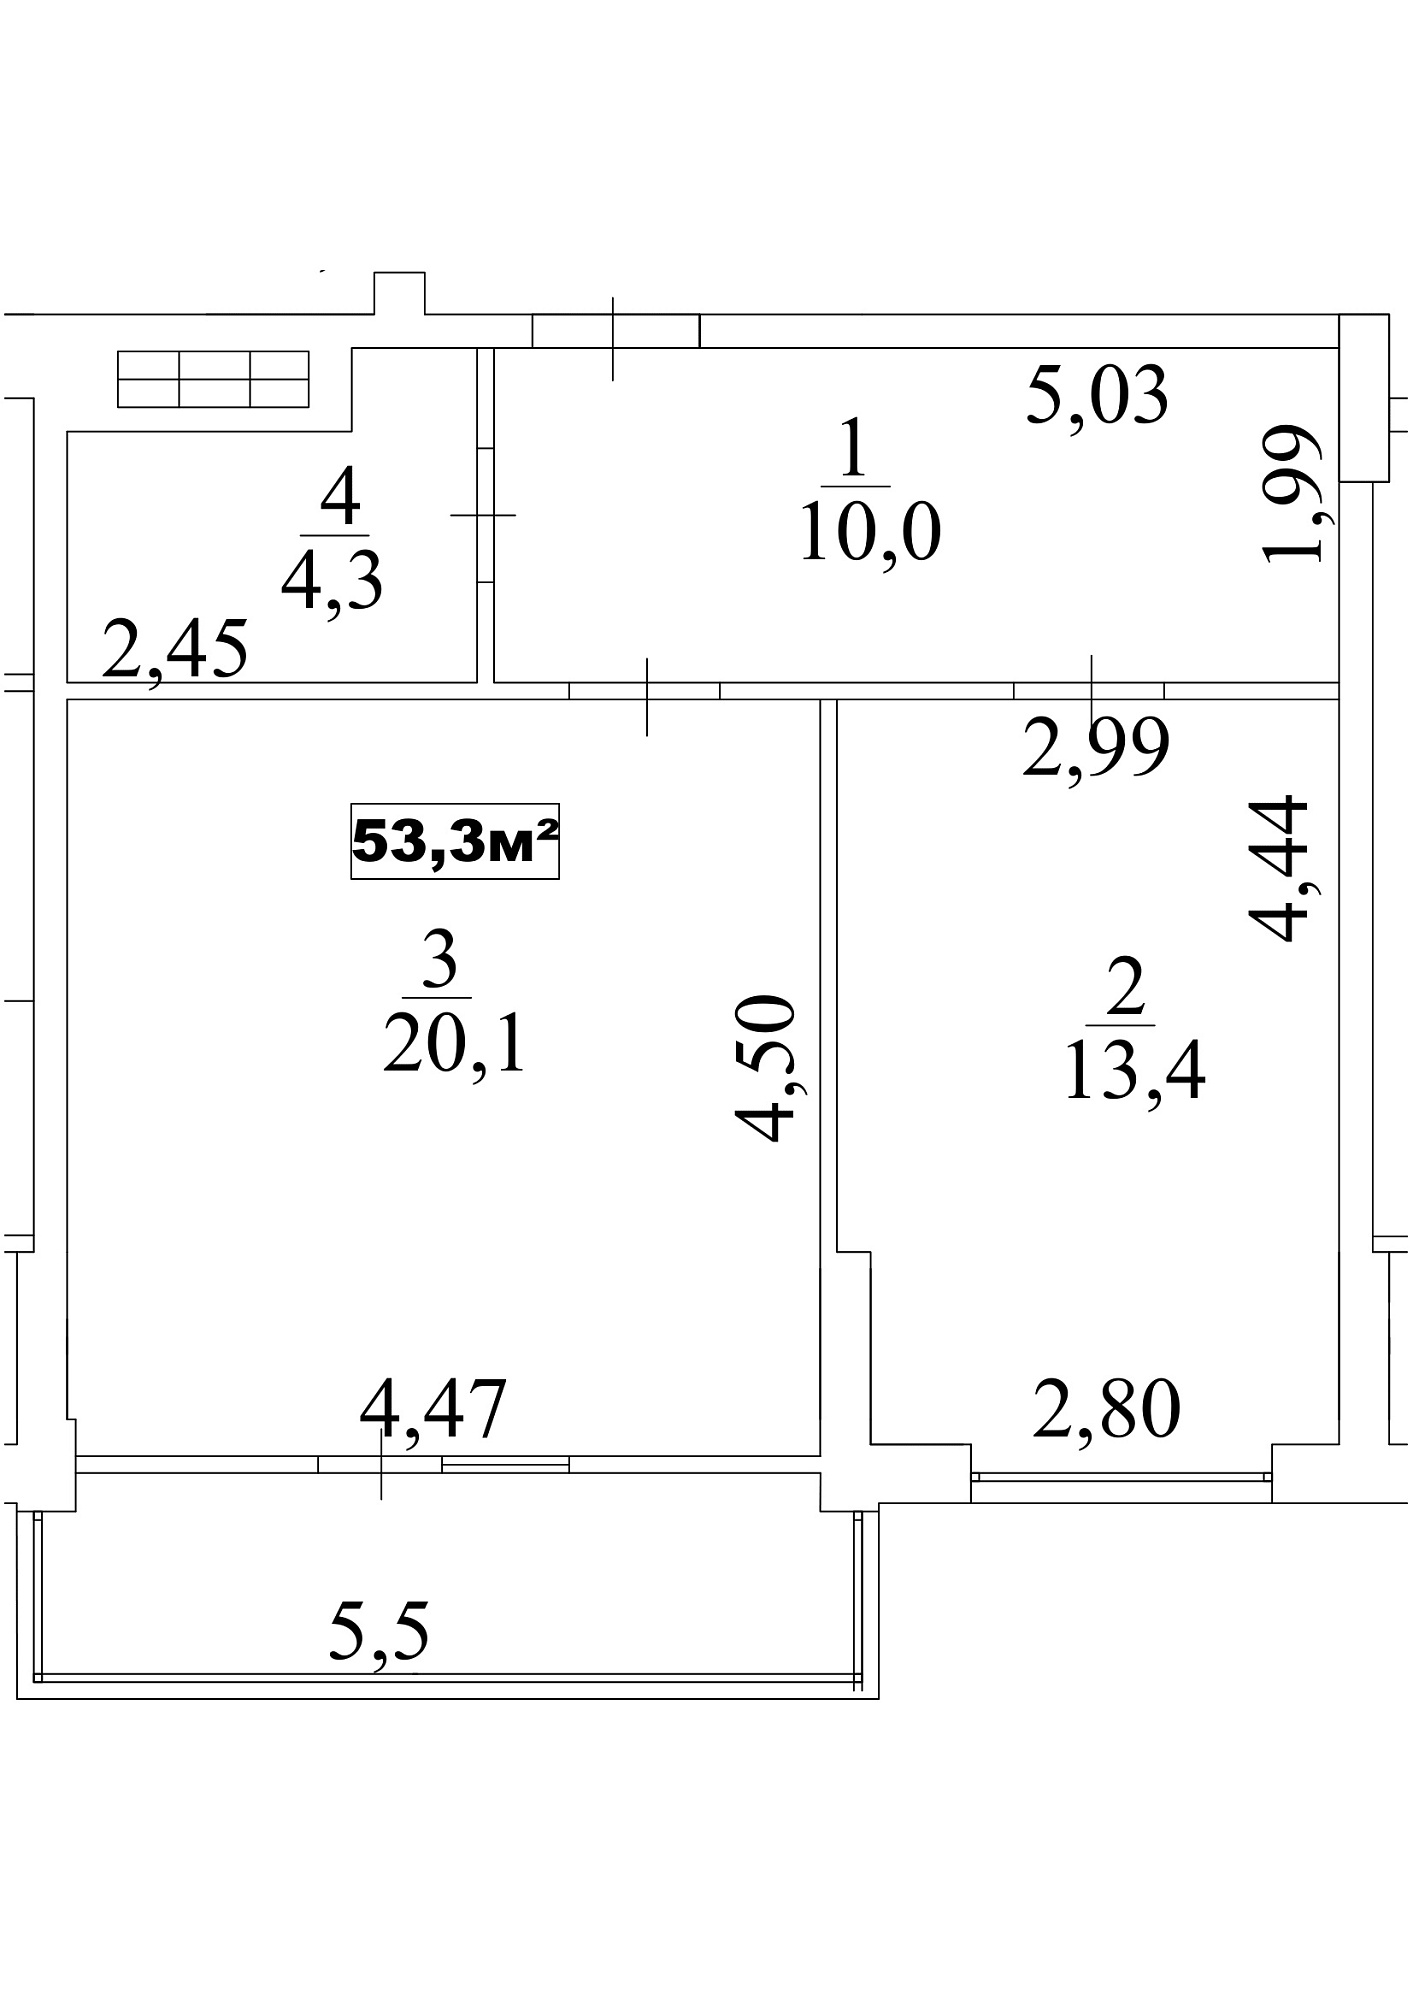 Планировка 1-к квартира площей 53.3м2, AB-10-06/00053.